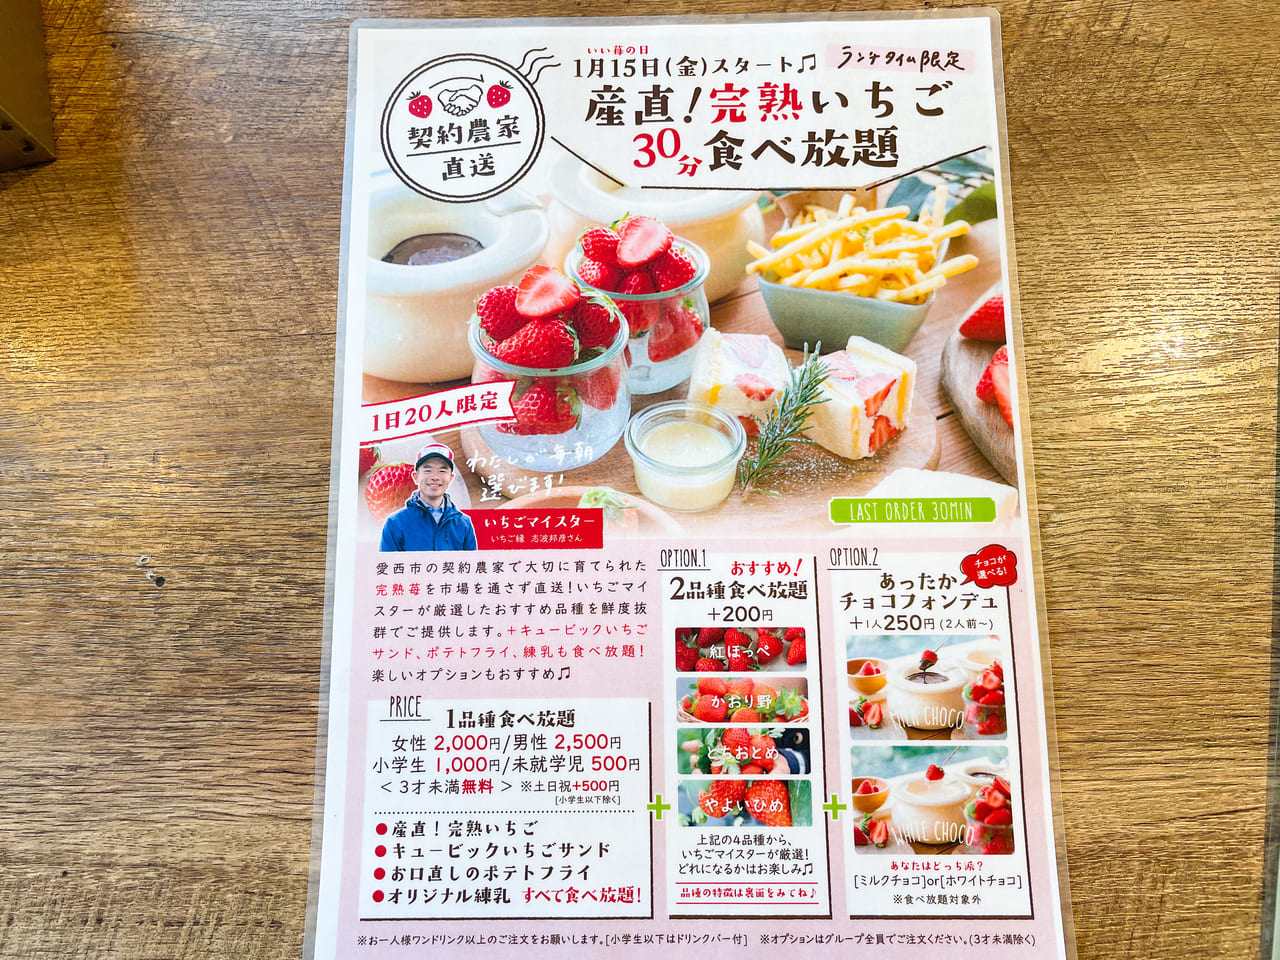 犬山市 今年も始まりました Yr Cafe By恵比寿楽園テーブル の完熟いちご食べ放題 号外net 小牧市 犬山市